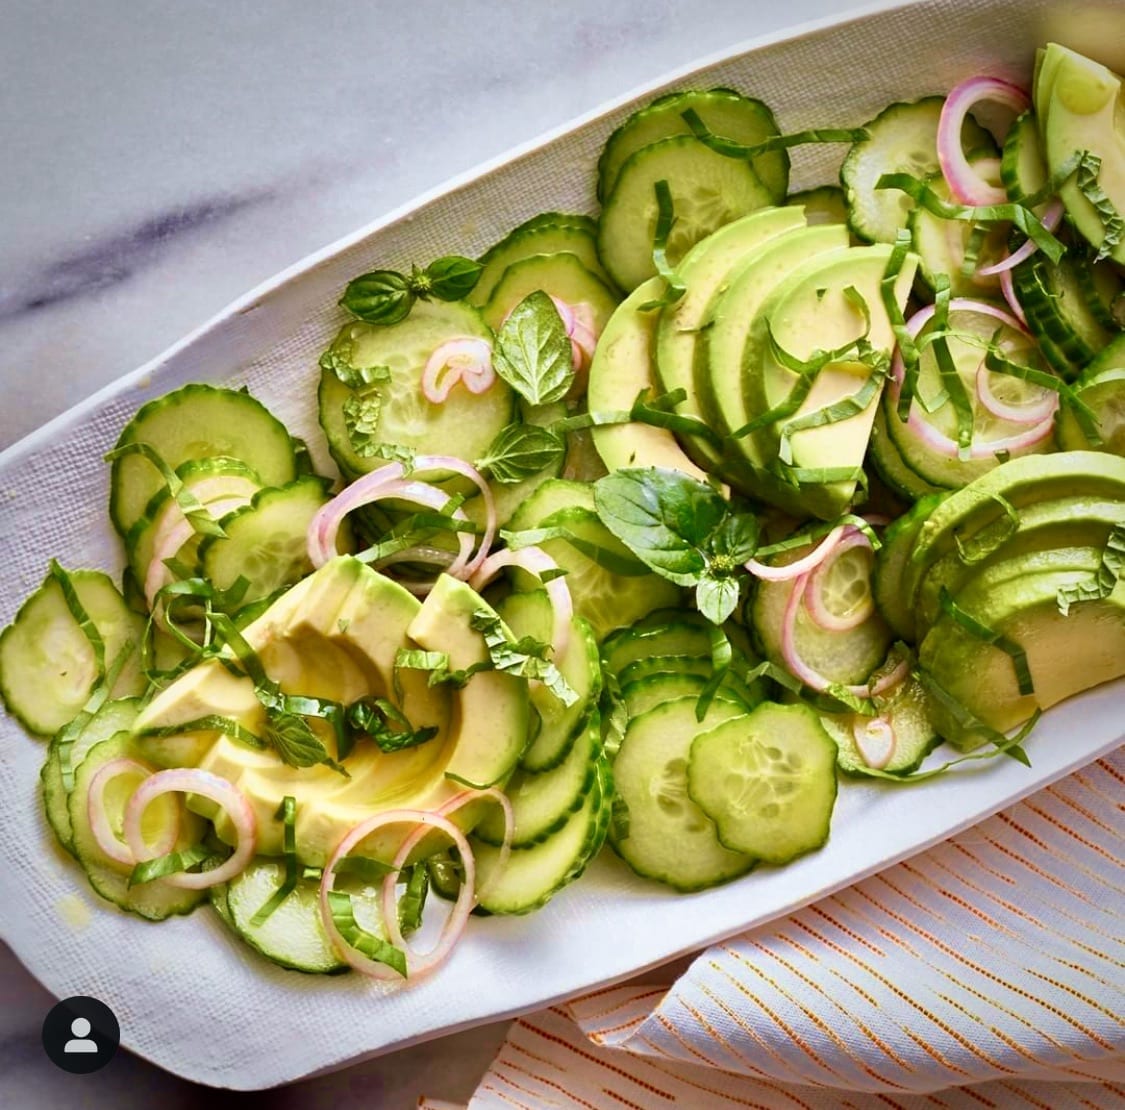 avocado cucumber salad, healthy salad recipe, best salad recipes, summer salad recipes, green salad recipe, avocado salad recipe, cucumber salad recipe, summer side recipes, summer grilling recipes